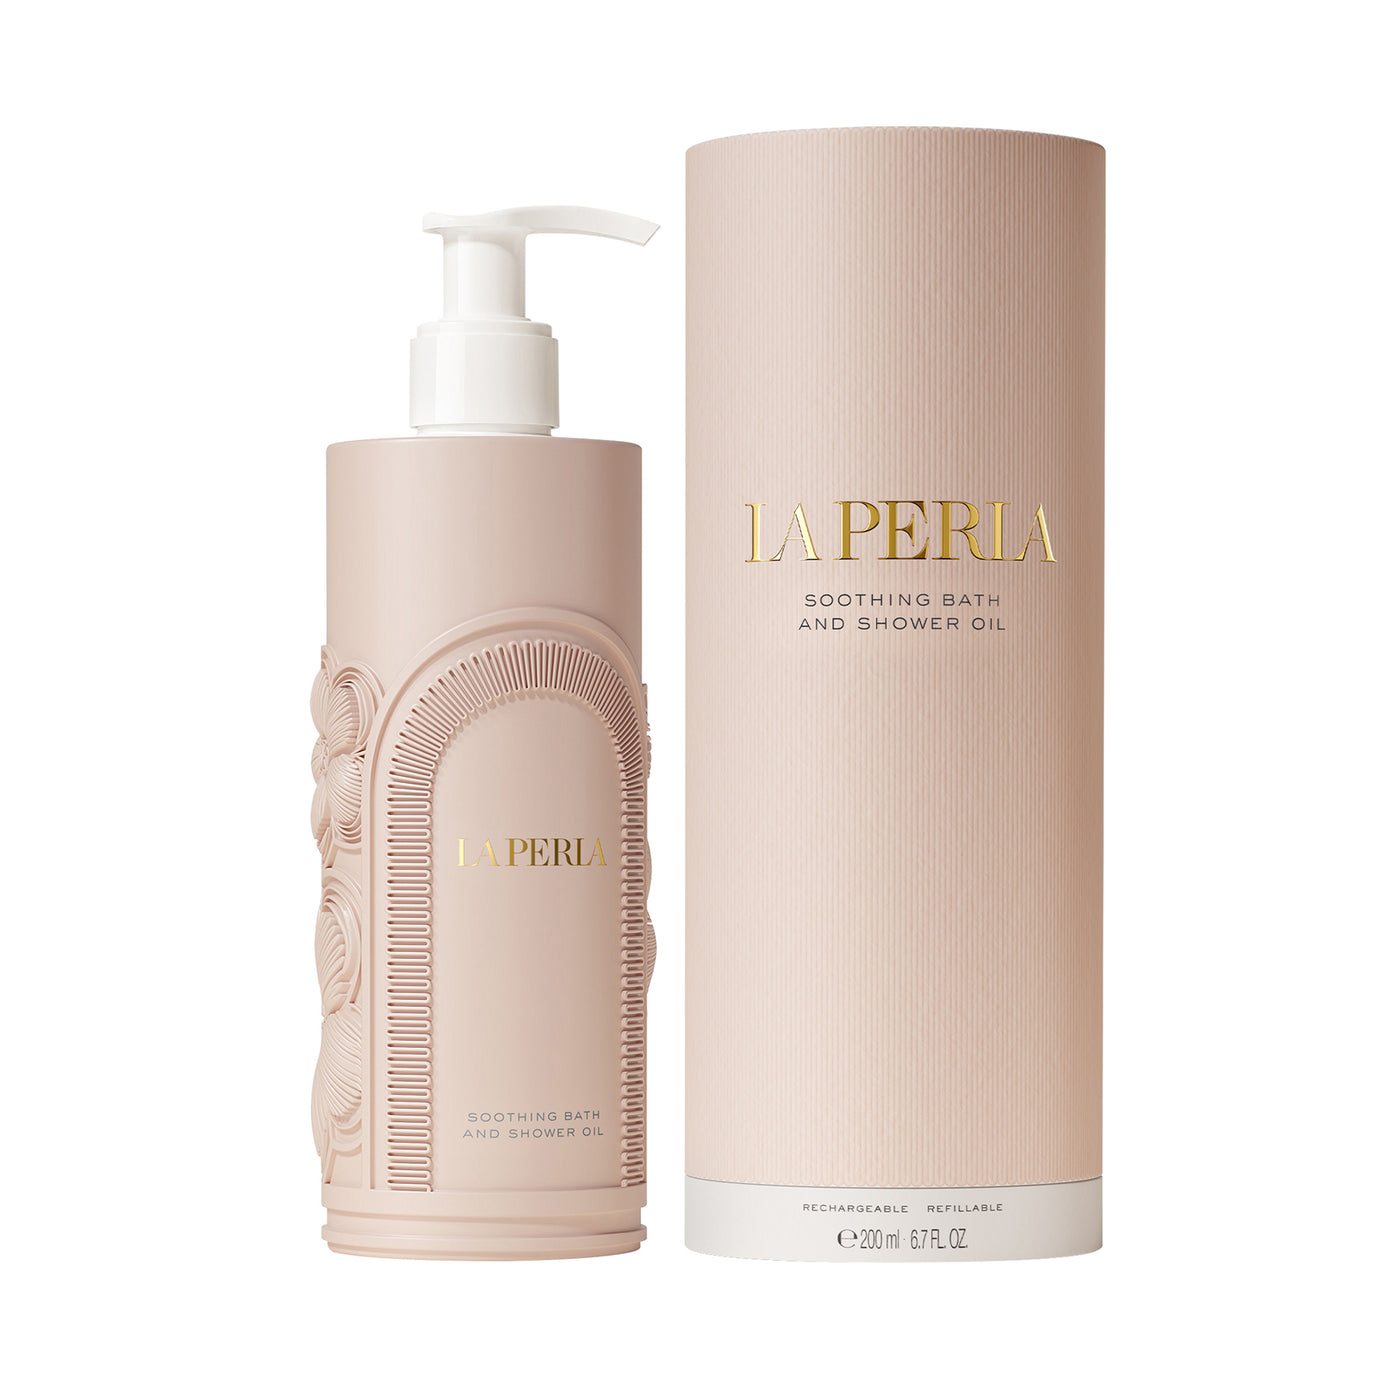 La Perla Bath & Shower Oil 200ml